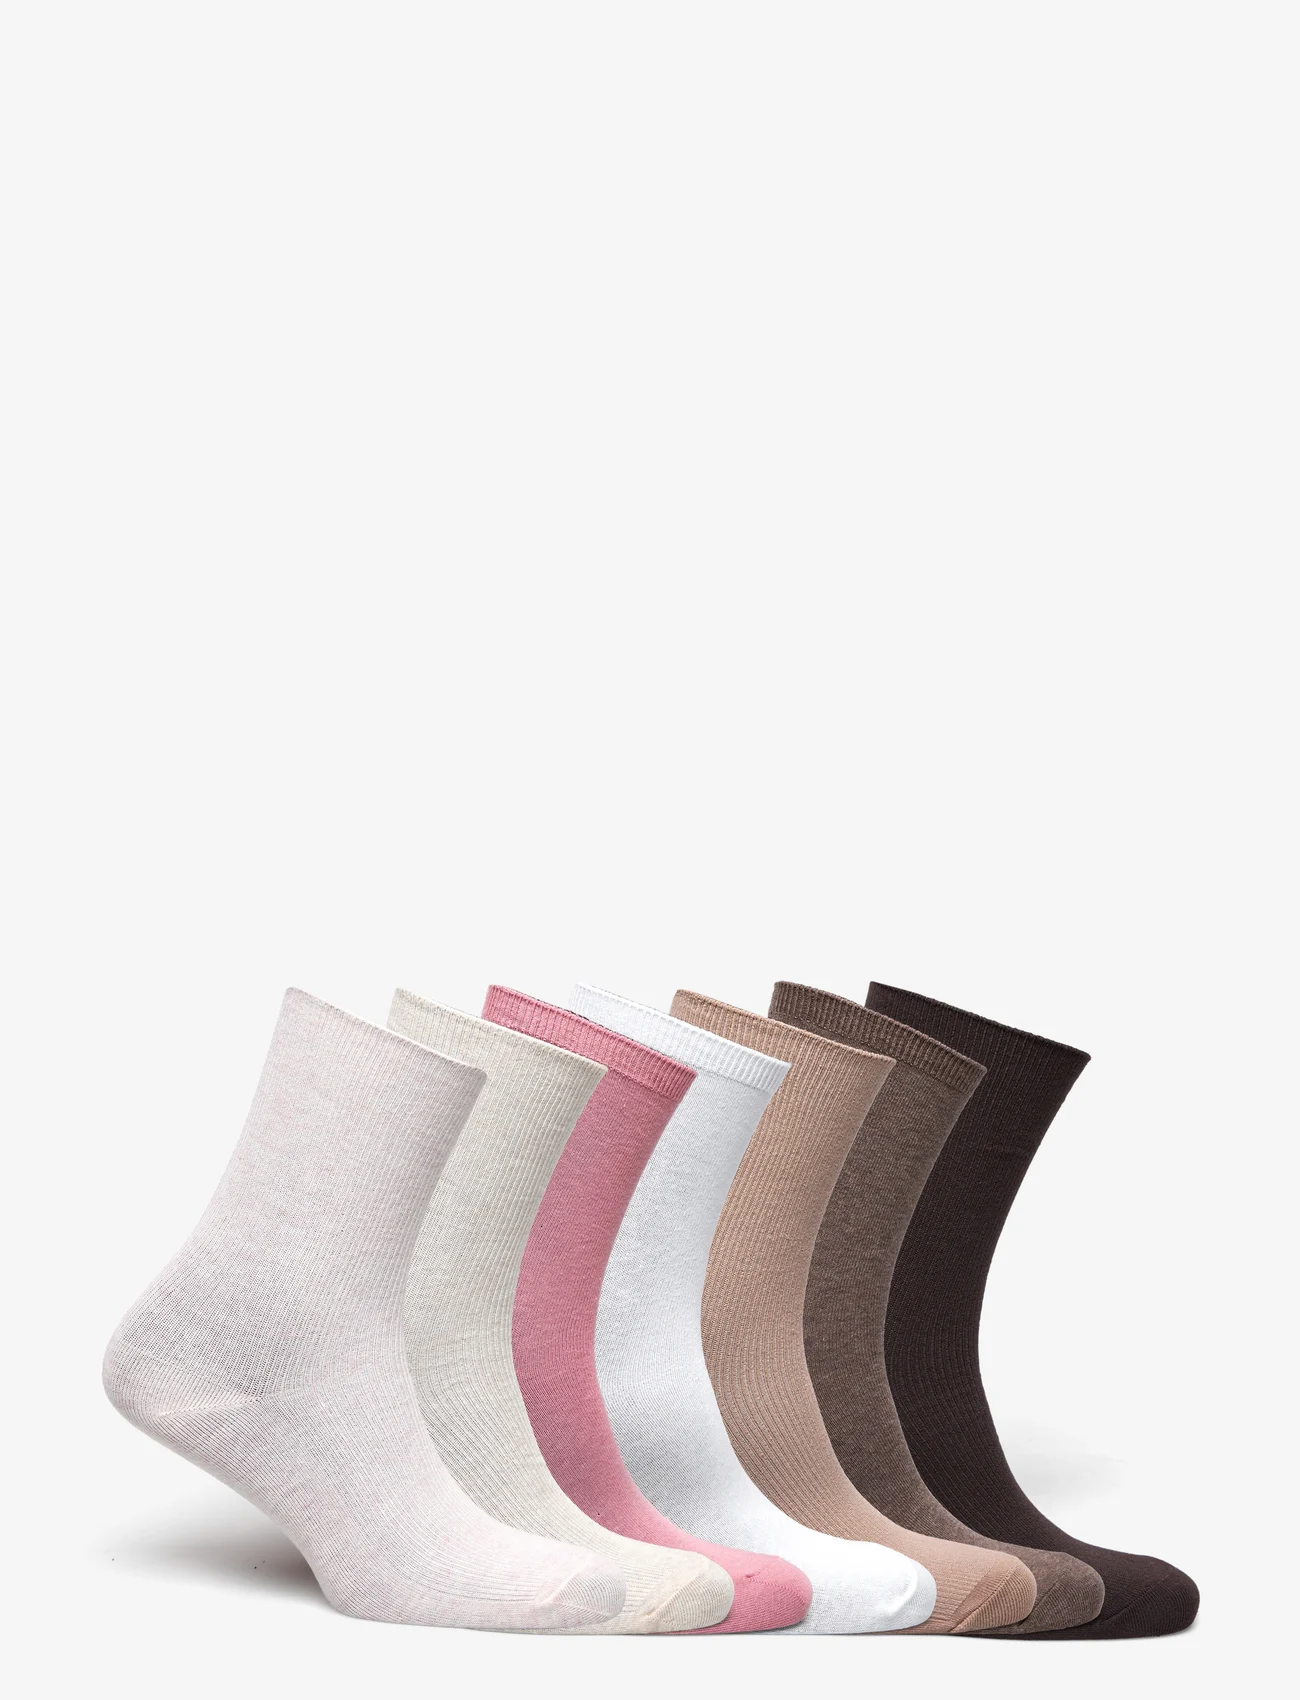 Lindex - Sock 7 p soft colors rib and p - madalaimad hinnad - light pink melange - 1